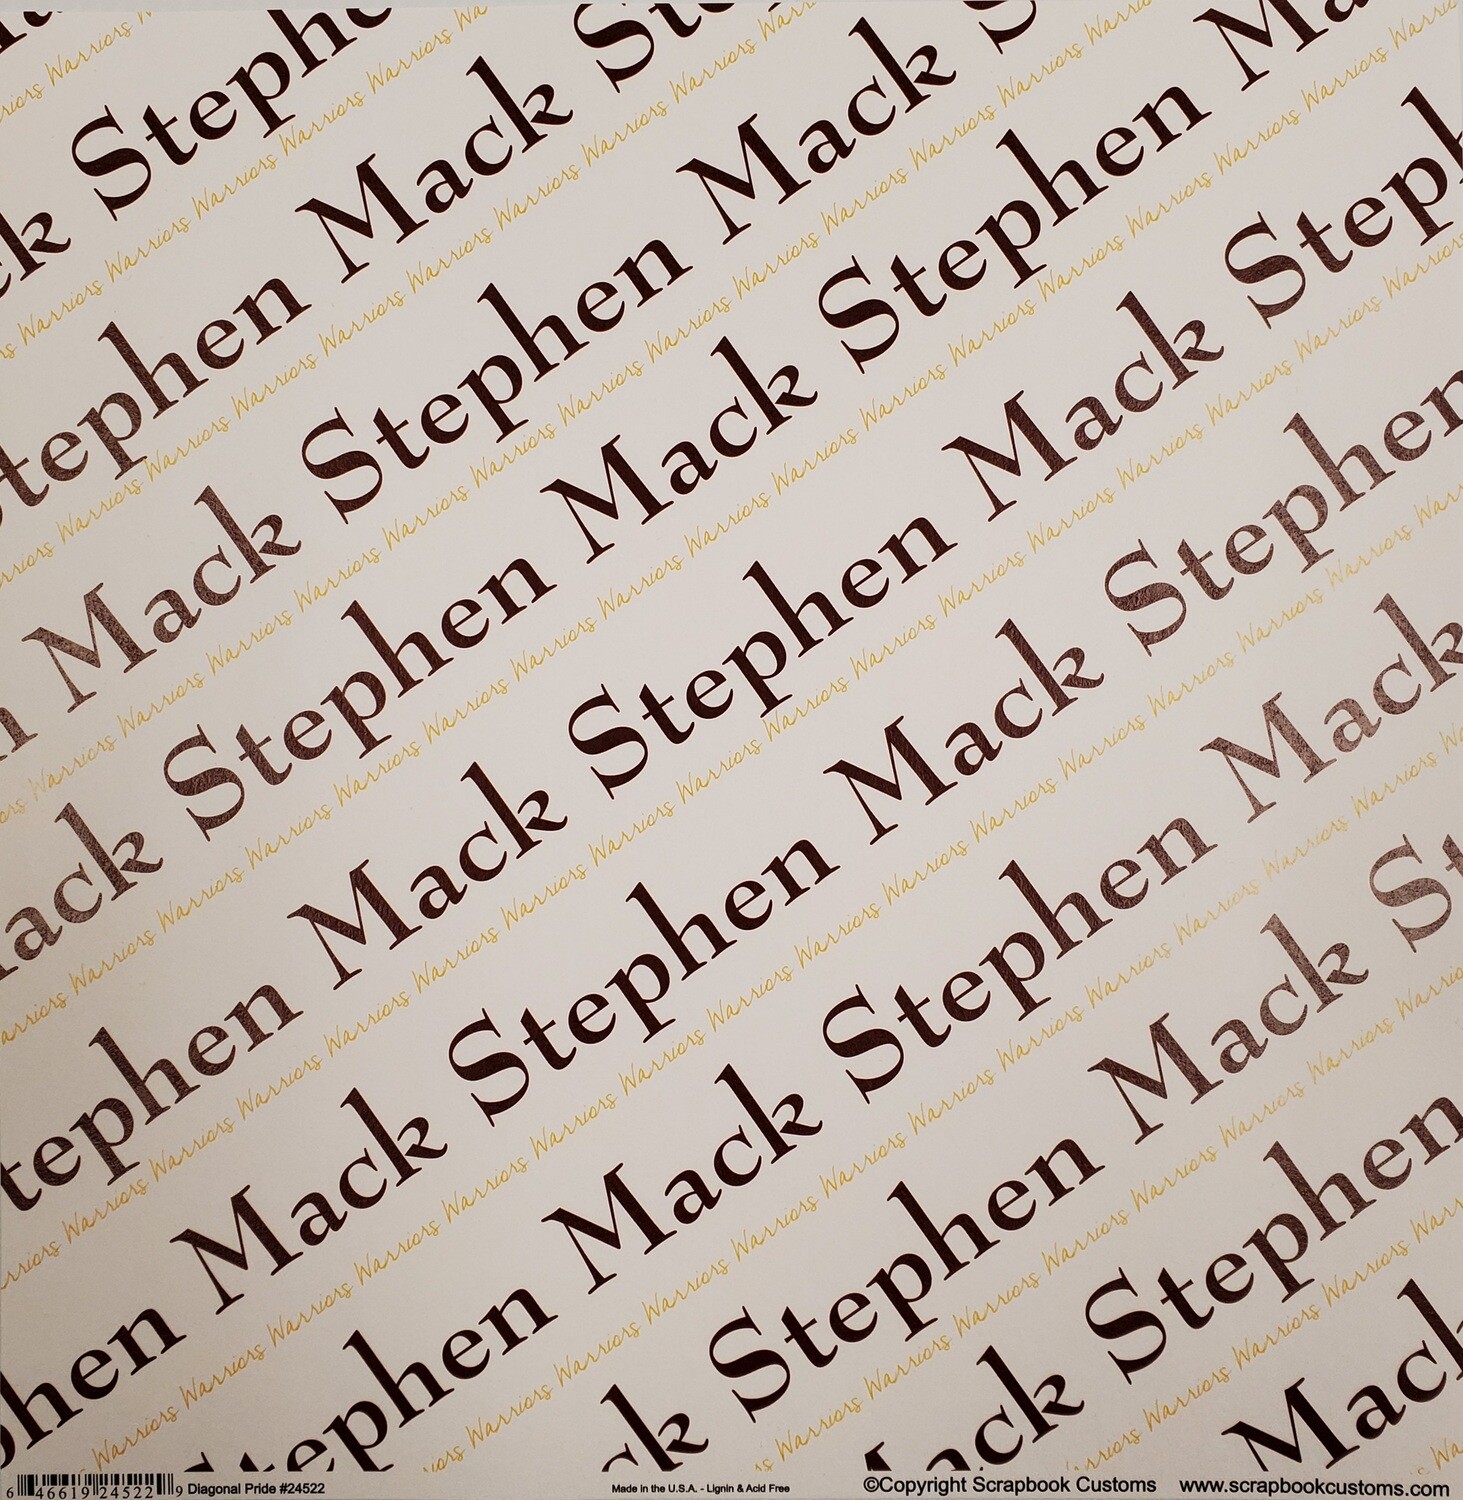 Stephen Mack Scrapbook Paper, Diagonal Pride, Maroon & Gold